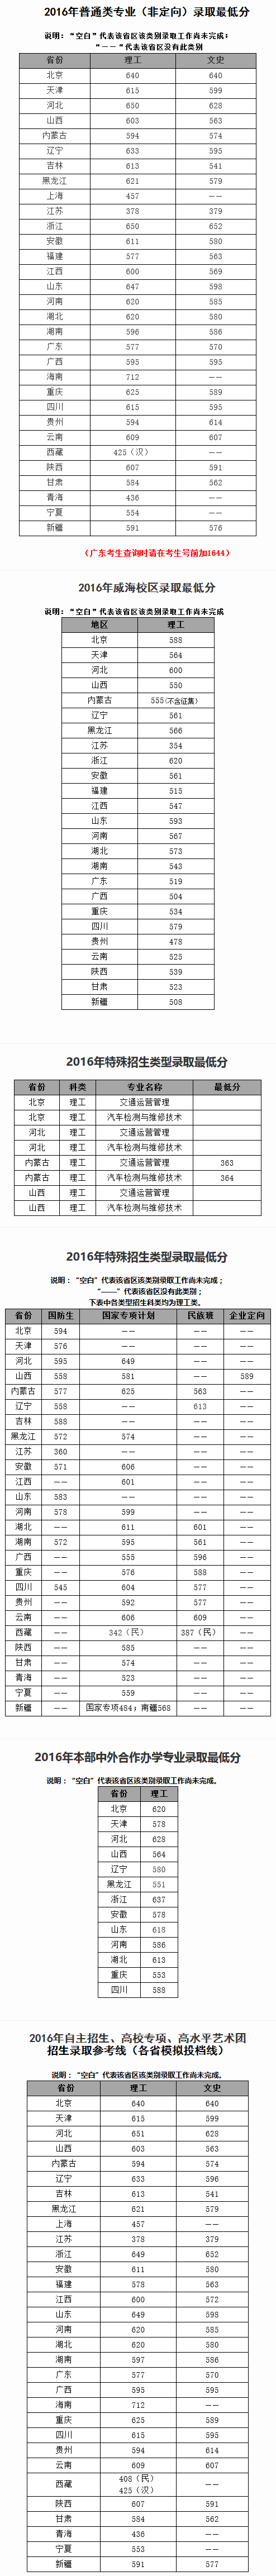 北京交通大学2016年各省录取分数线1